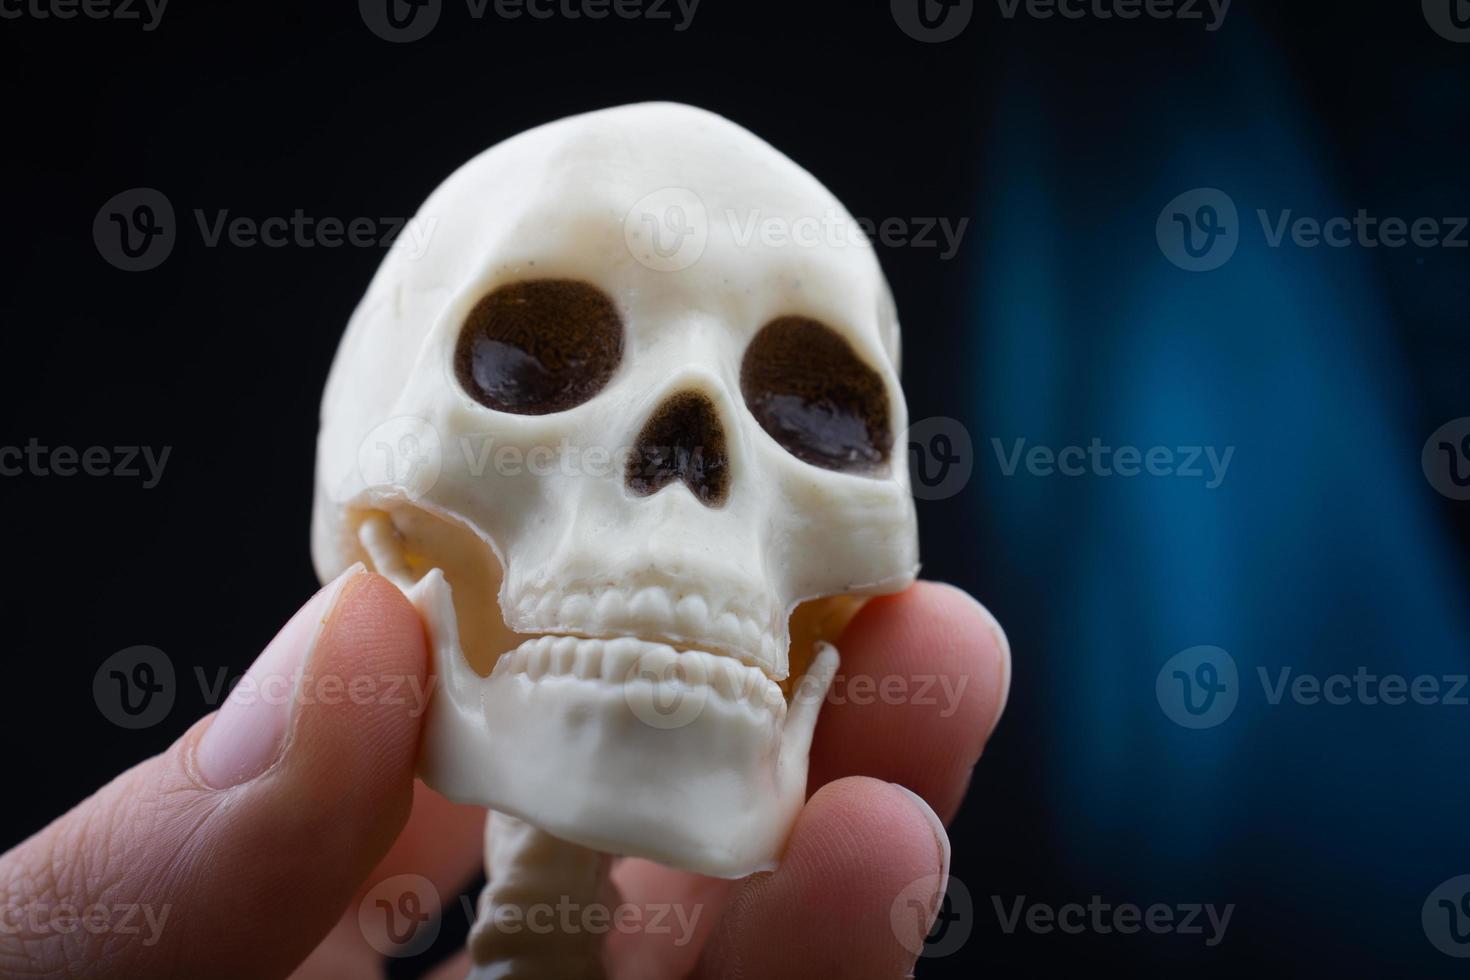 umano scheletro cranio modello nel mano in posa per medico anatomia scienza foto